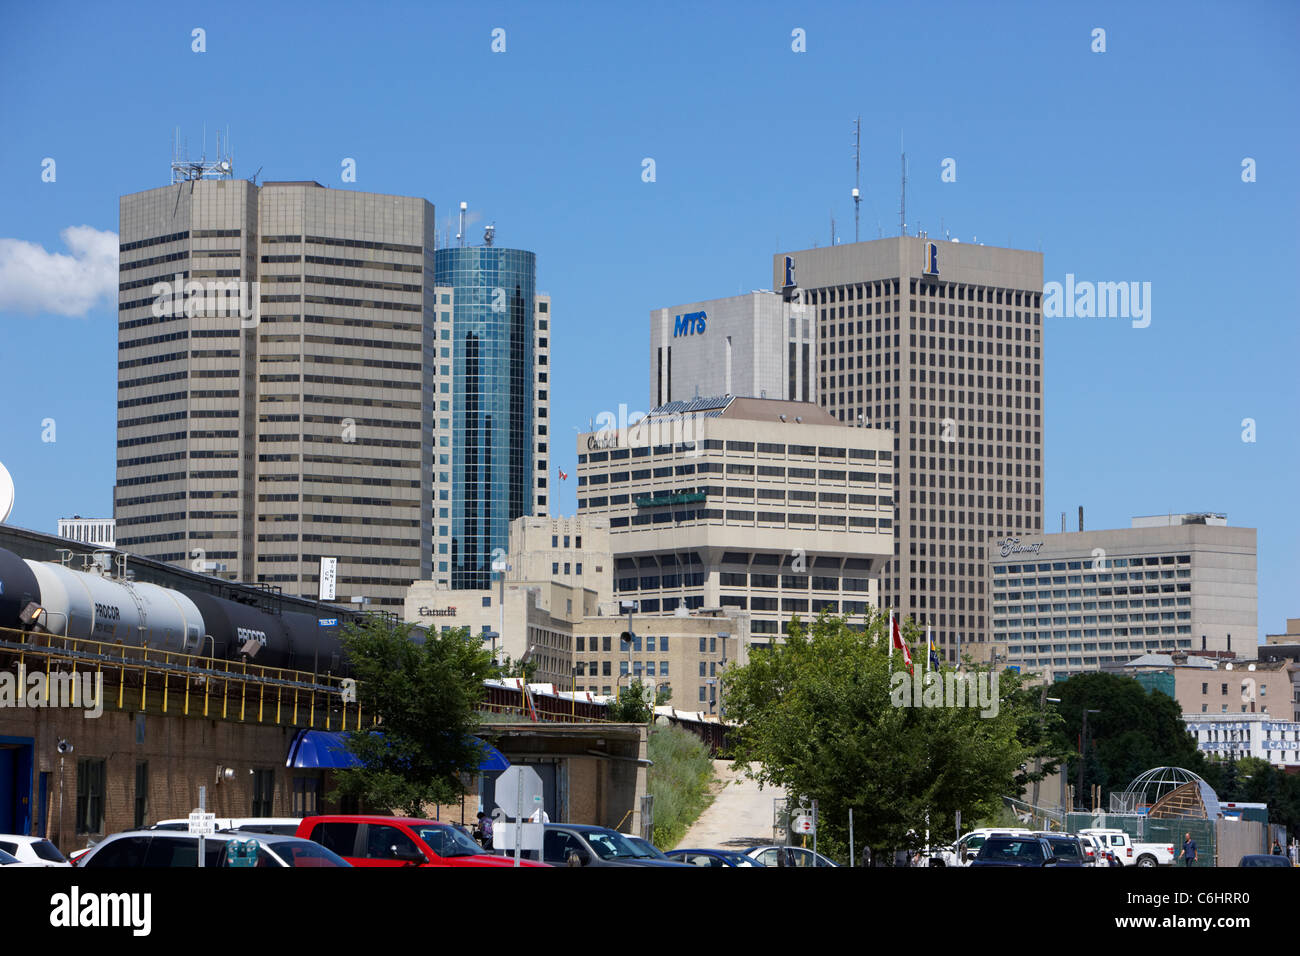 Vue sur le centre-ville de city business financial district de Winnipeg Manitoba canada Banque D'Images